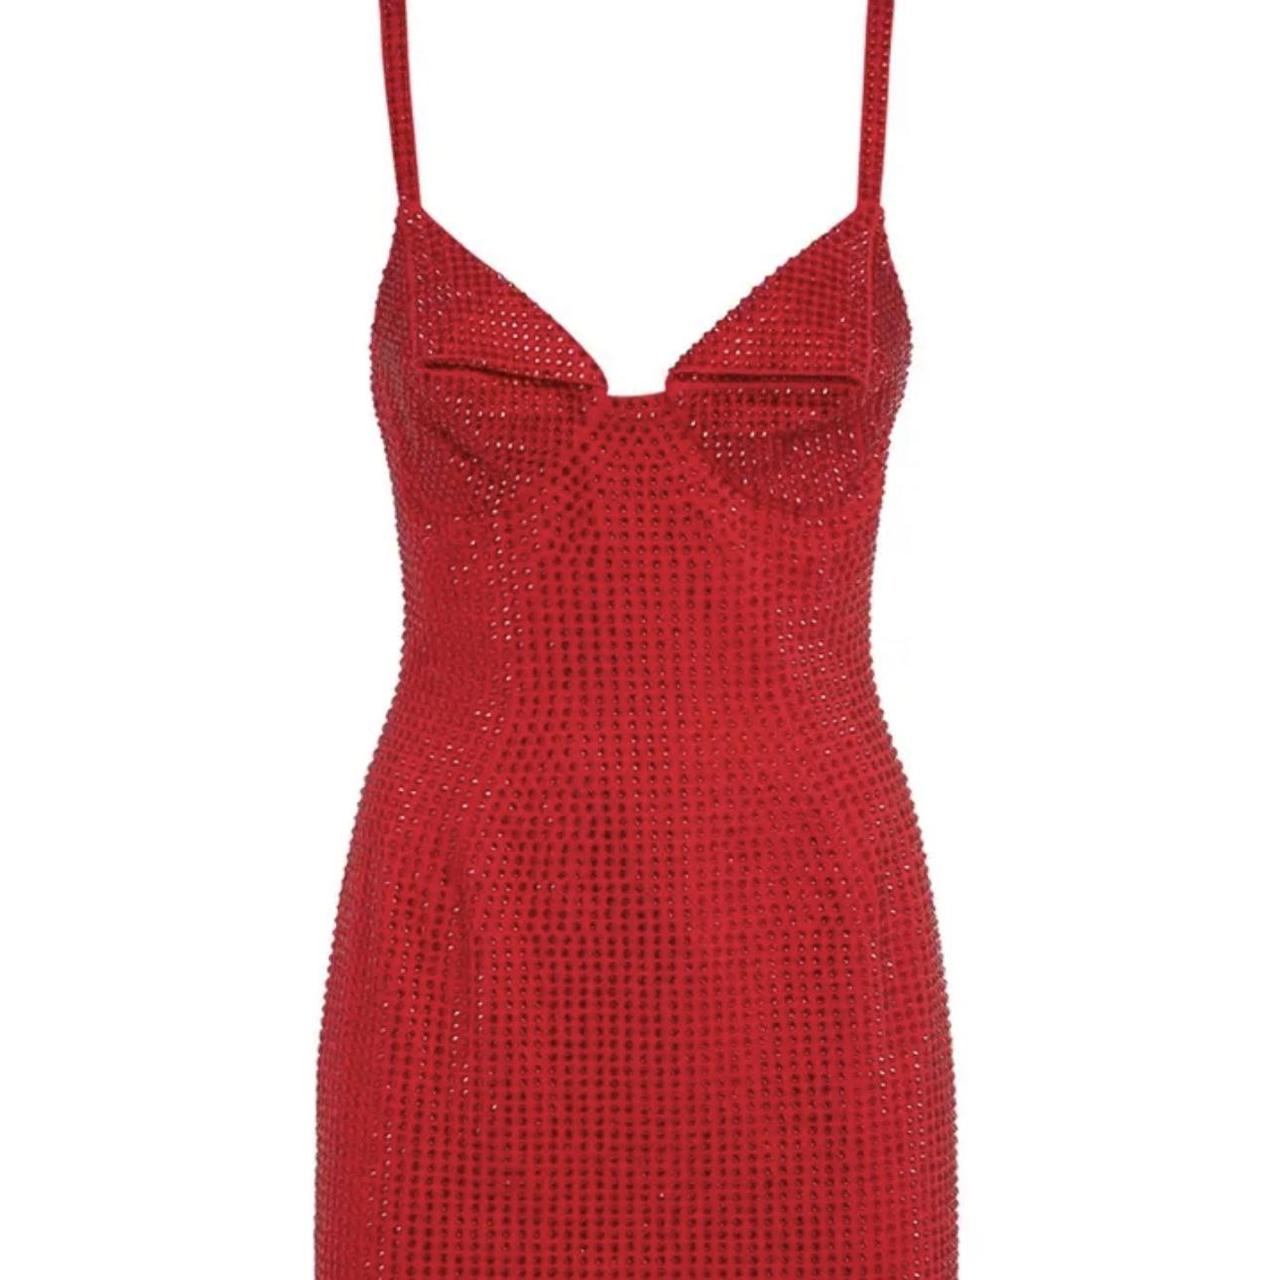 Red glitter dress Size small Will fit 8-10 Worn... - Depop